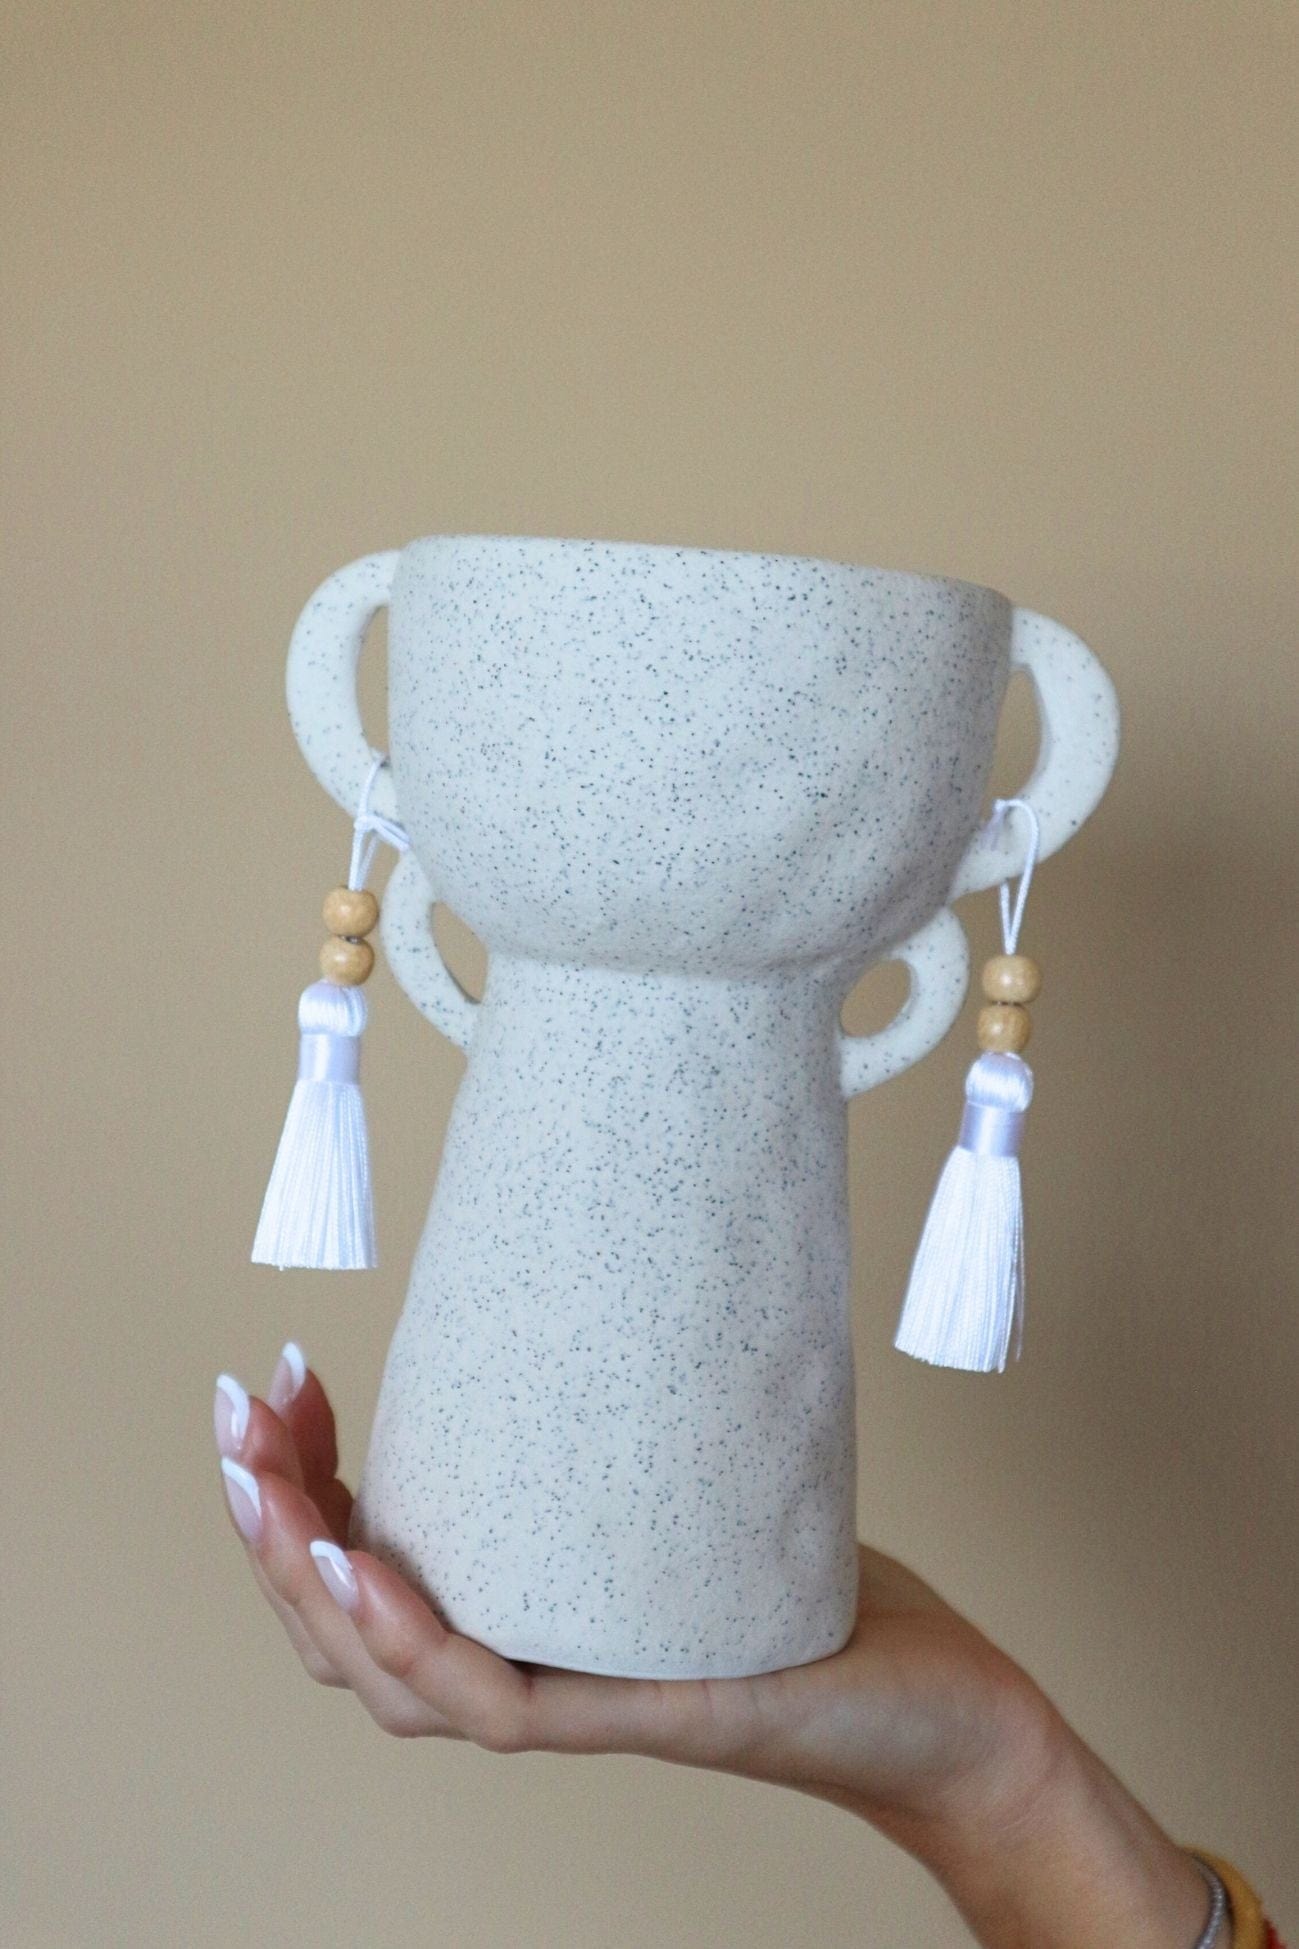 Item International Ayel Ayel - Vaso in ceramica beige in stile etnico con orecchie | Item International